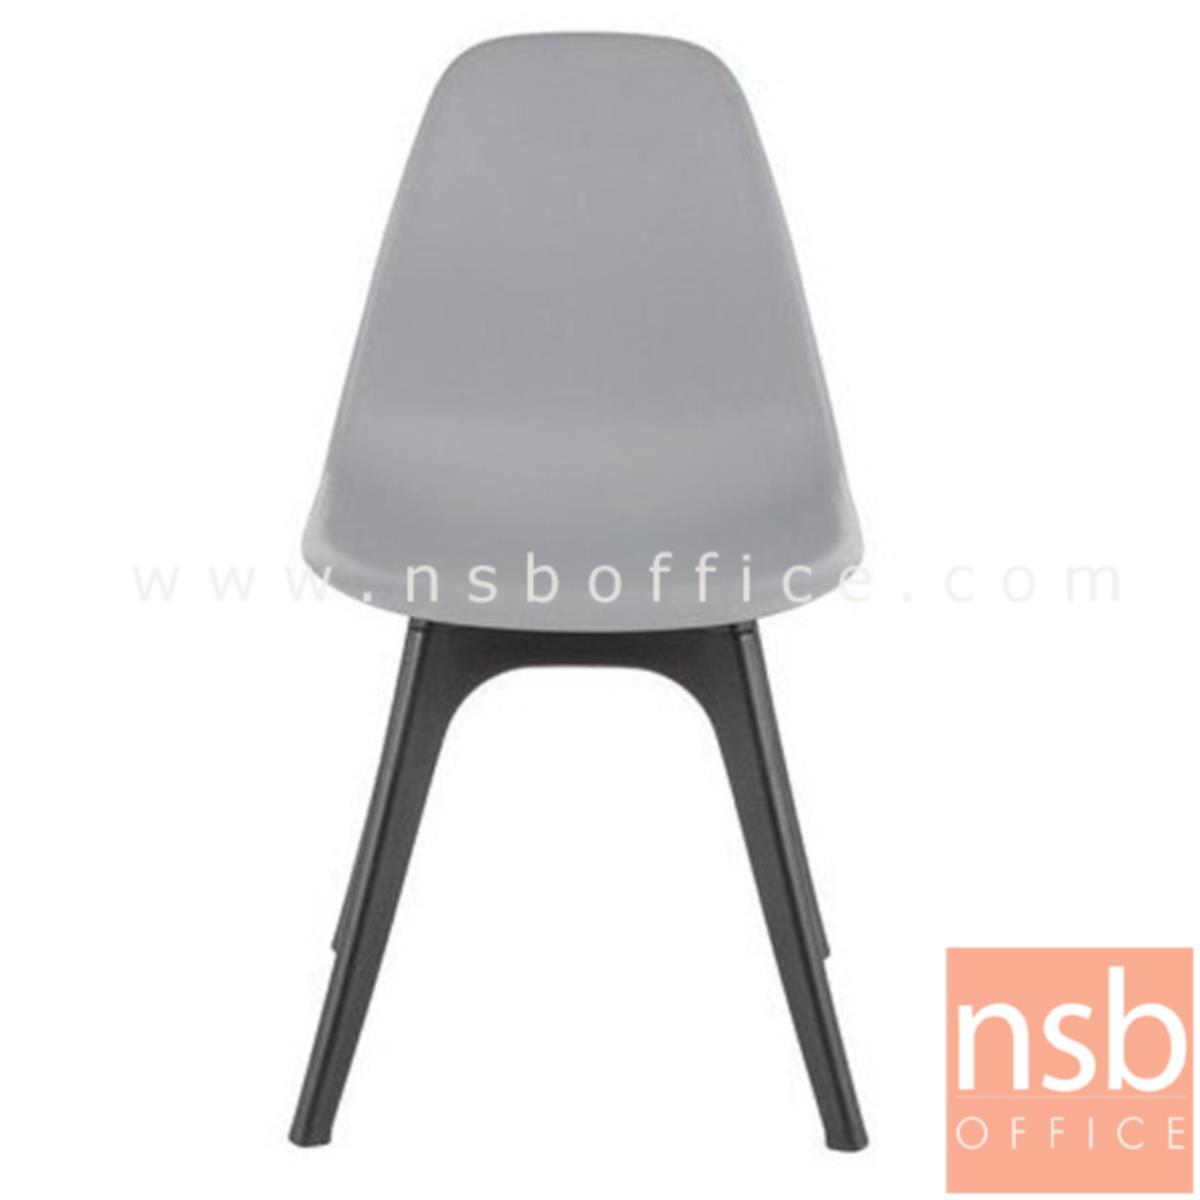 เก้าอี้โมเดิร์นพลาสติกสีสัน รุ่น Maceo (มาซิโอ) ขนาด 46.6W cm. 